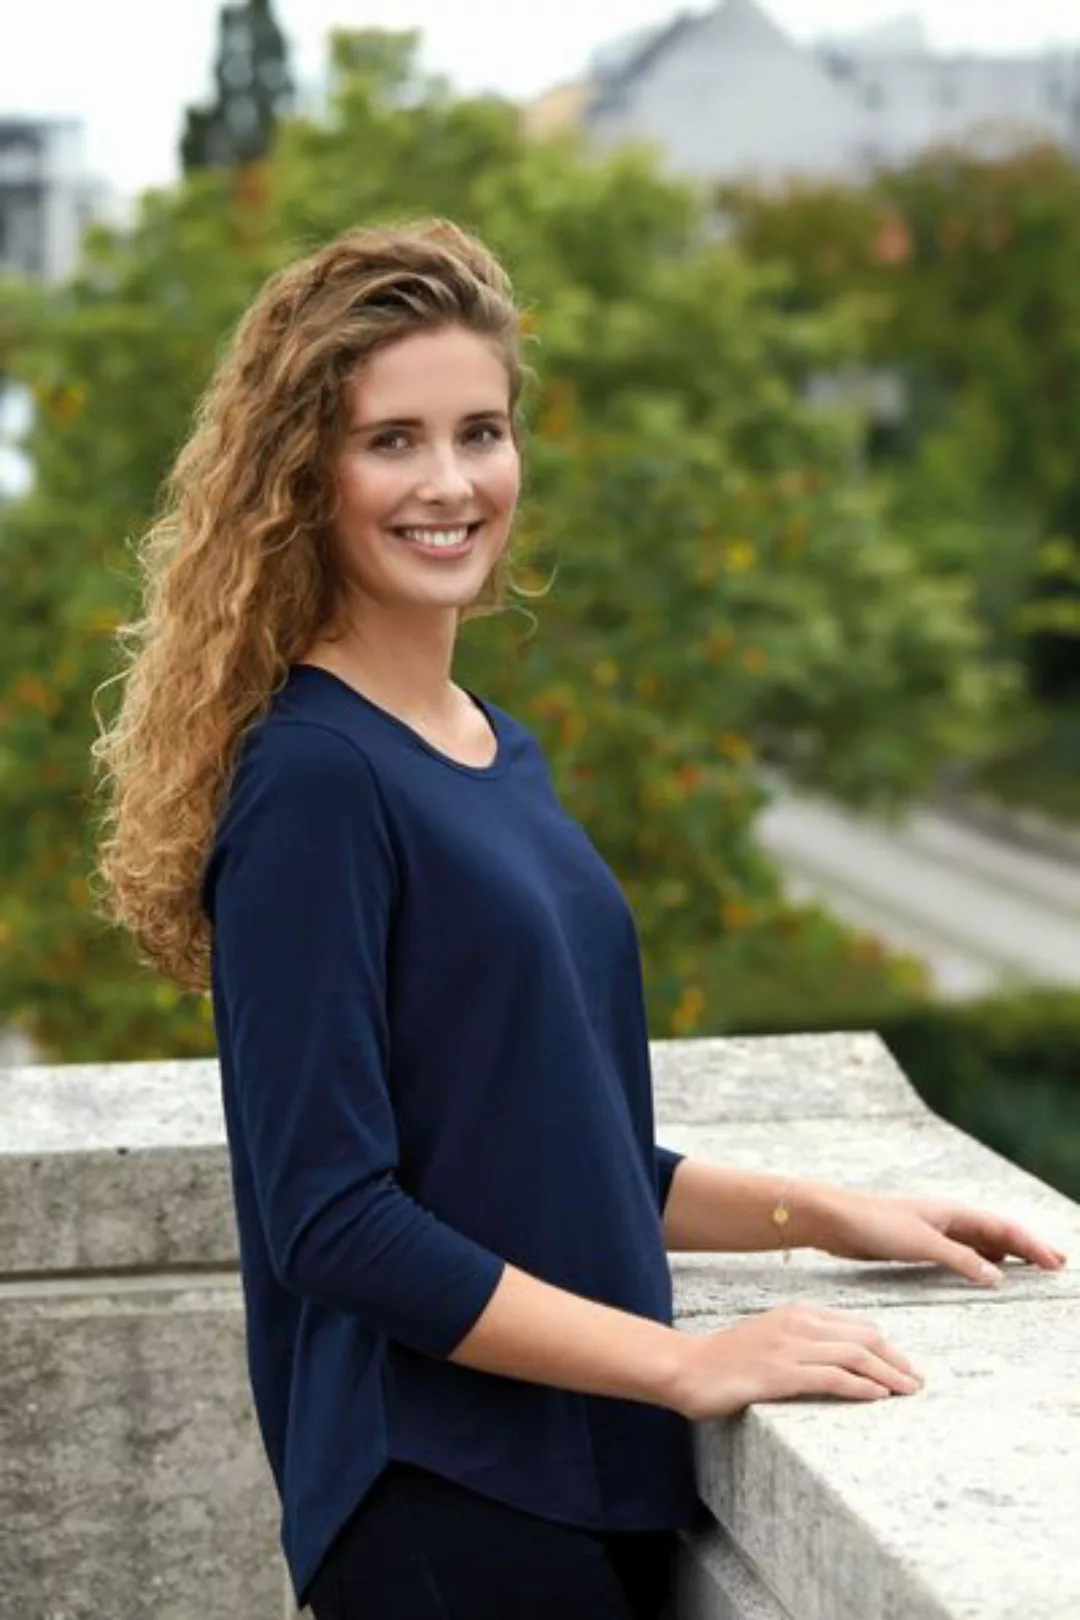 Damen T-shirt 3/4tel Arm Von Neutral Bio Baumwolle günstig online kaufen